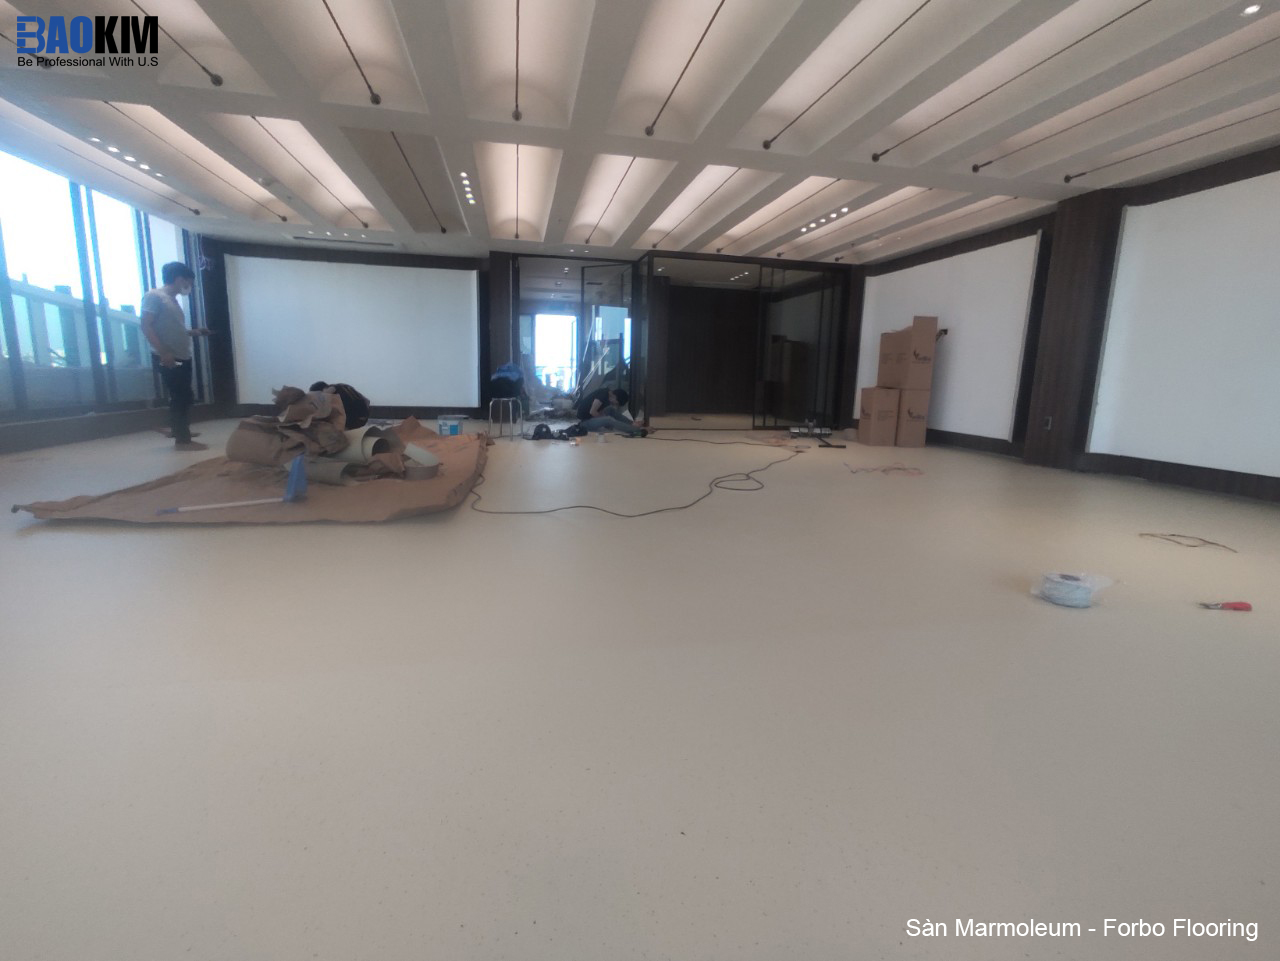 Lắp đặt sàn hữu cơ marmoleum - linoleum thuộc thương hiệu Forbo Flooring System